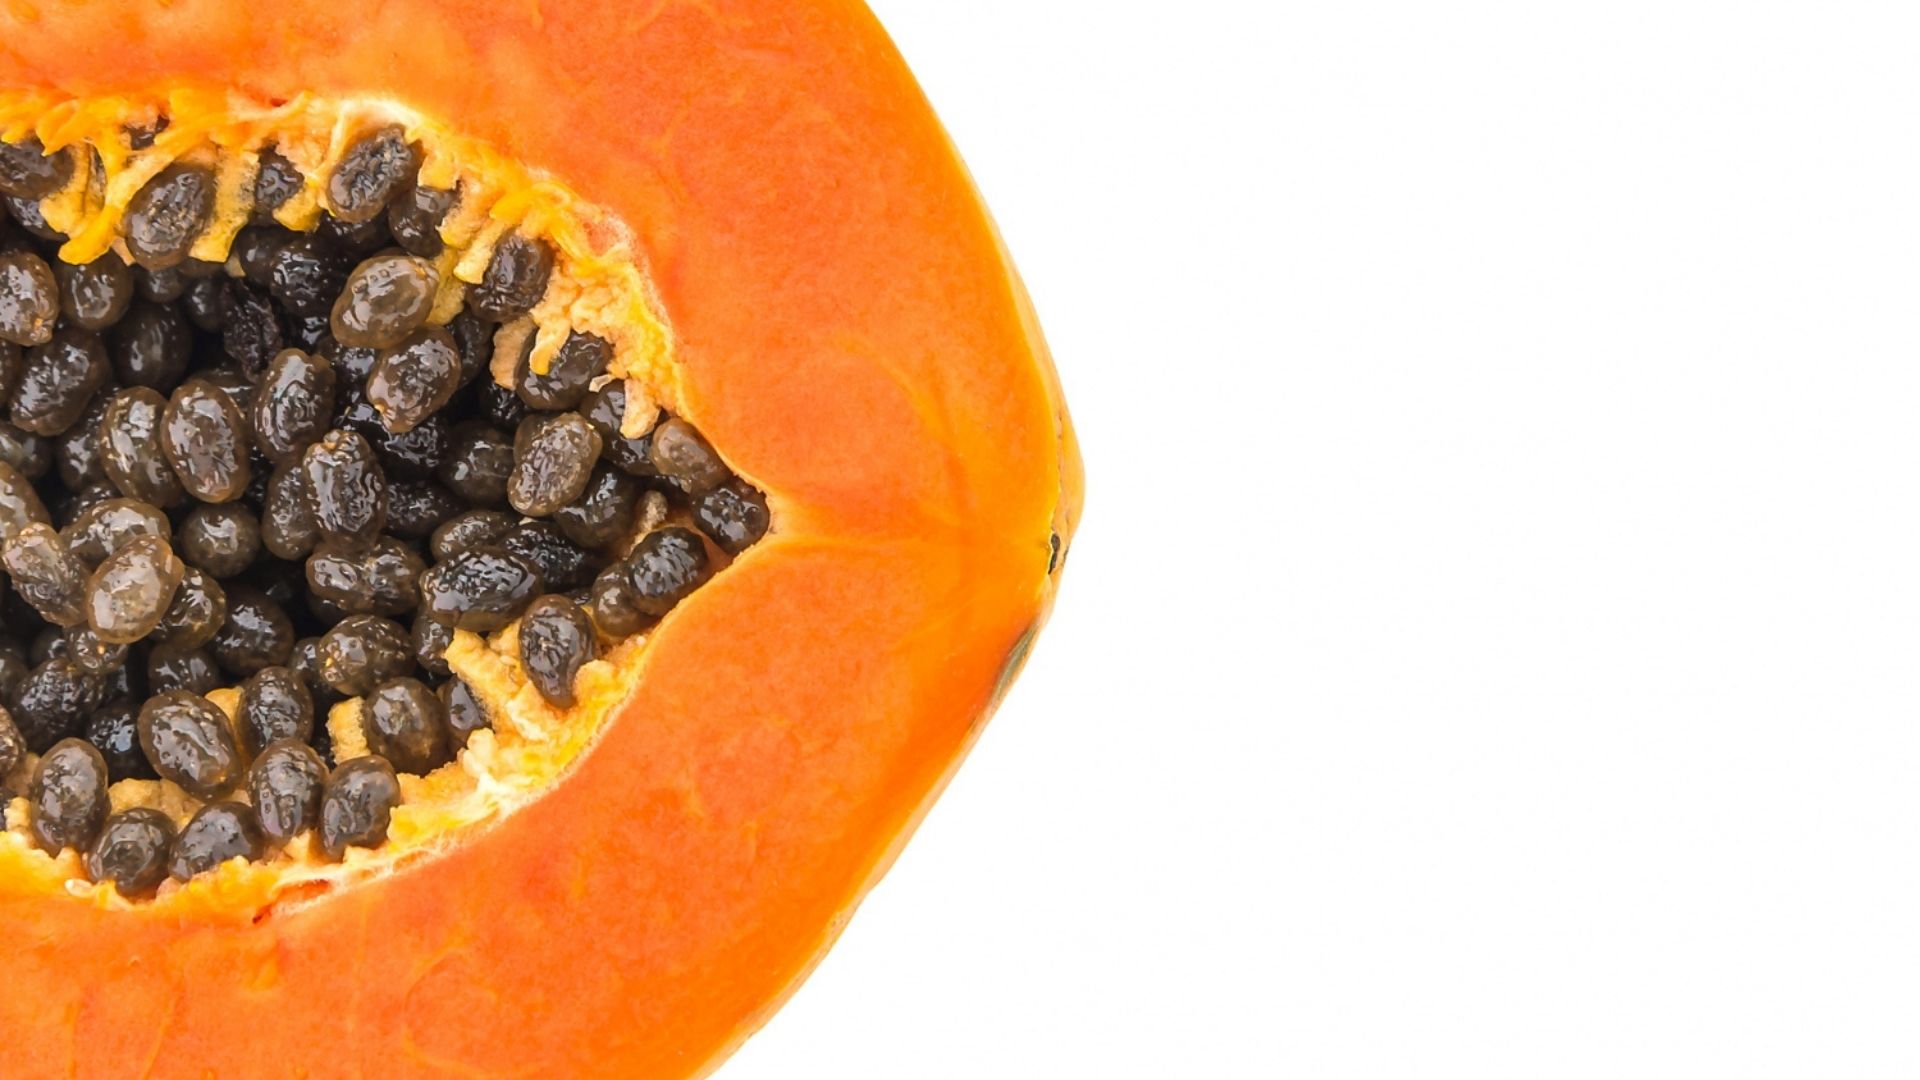 Foto de capa do artigo "Mamão: conheça a fruta que tem mais vitamina C que a laranja"